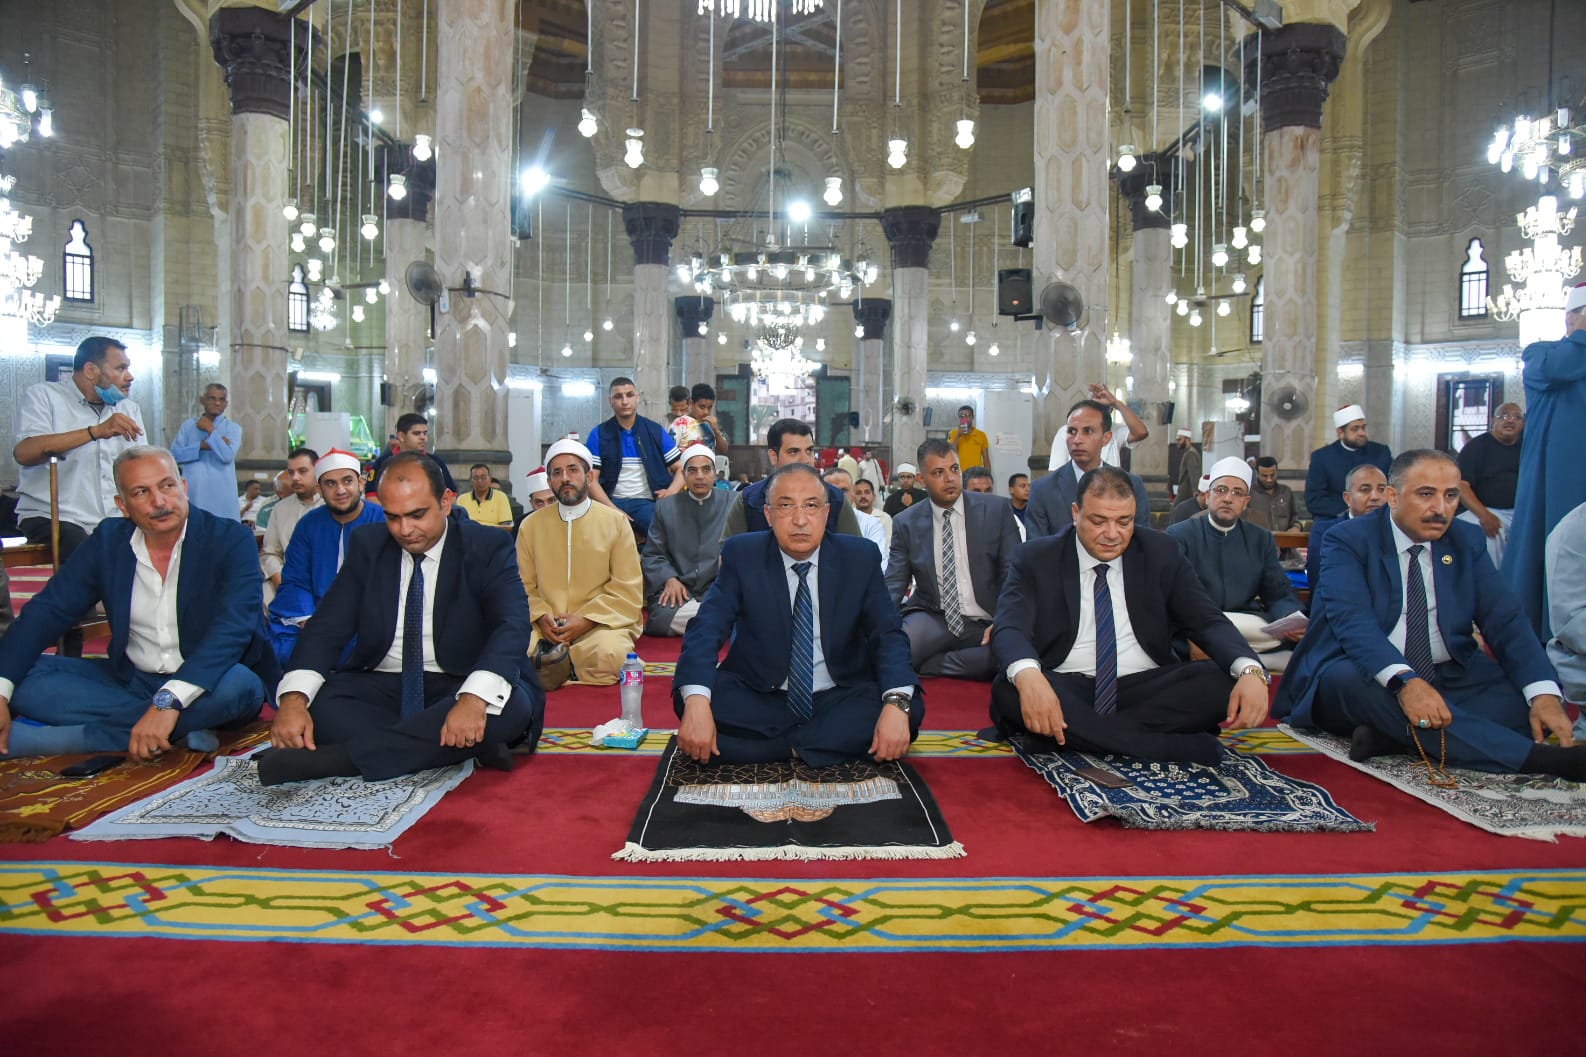 محافظ الإسكندرية يشهد الاحتفال بالعام الهجرى الجديد بمسجد ابي العباس المرسي